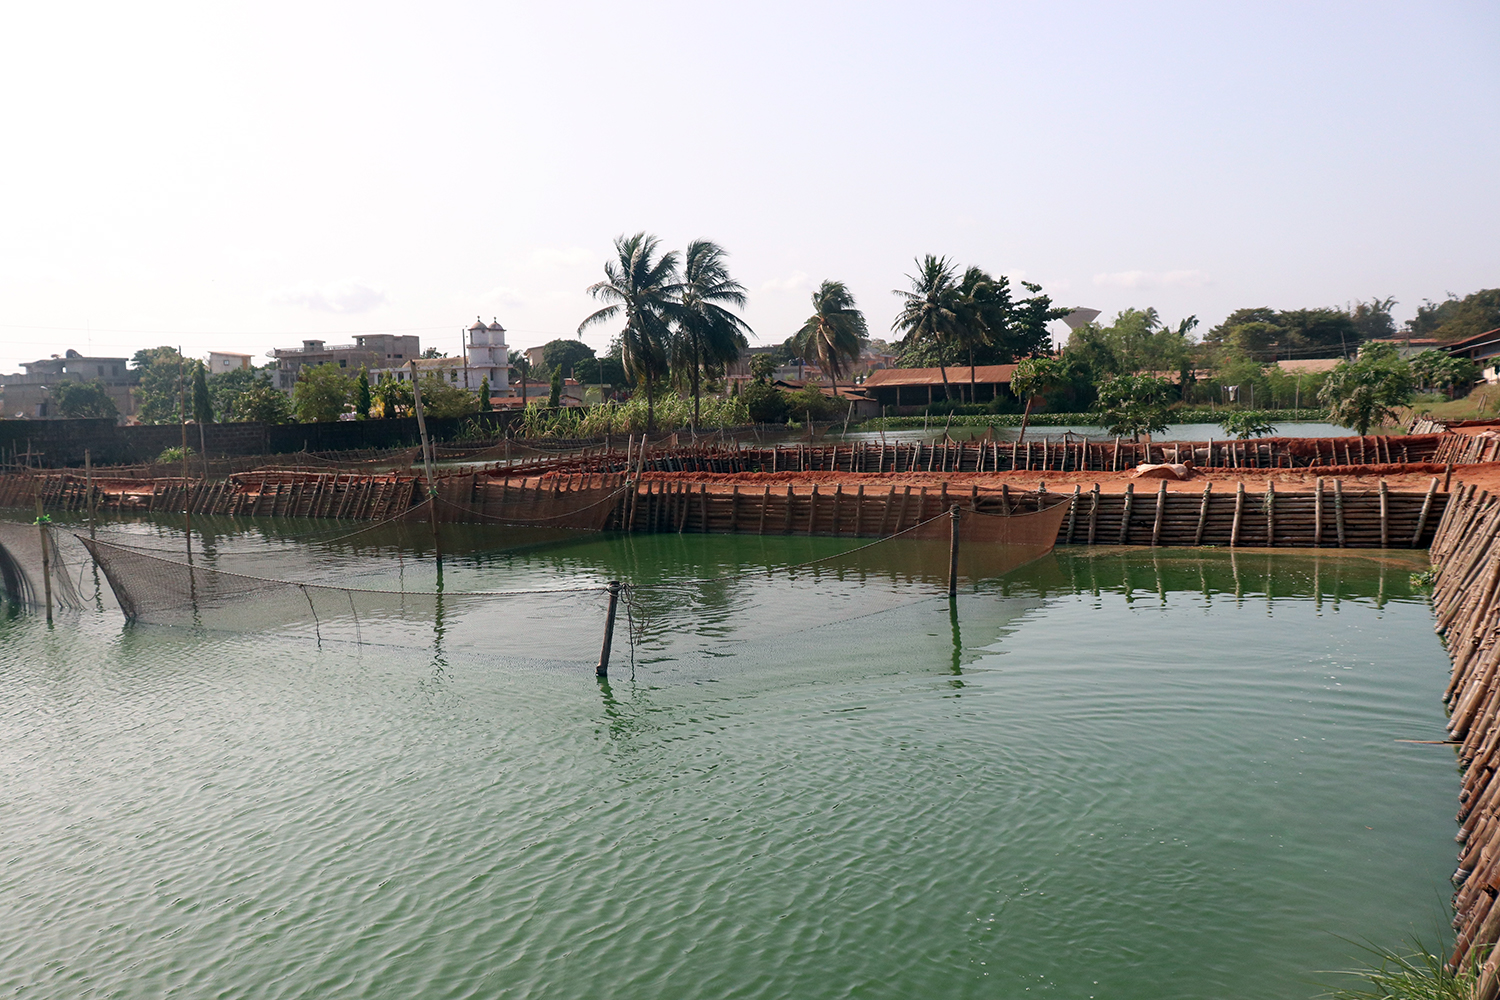 La pisciculture n’est pas oubliée. Les résidus ou déchets sortis de ces bassins artificiels pleins de poissons sont réinvestis dans la production.